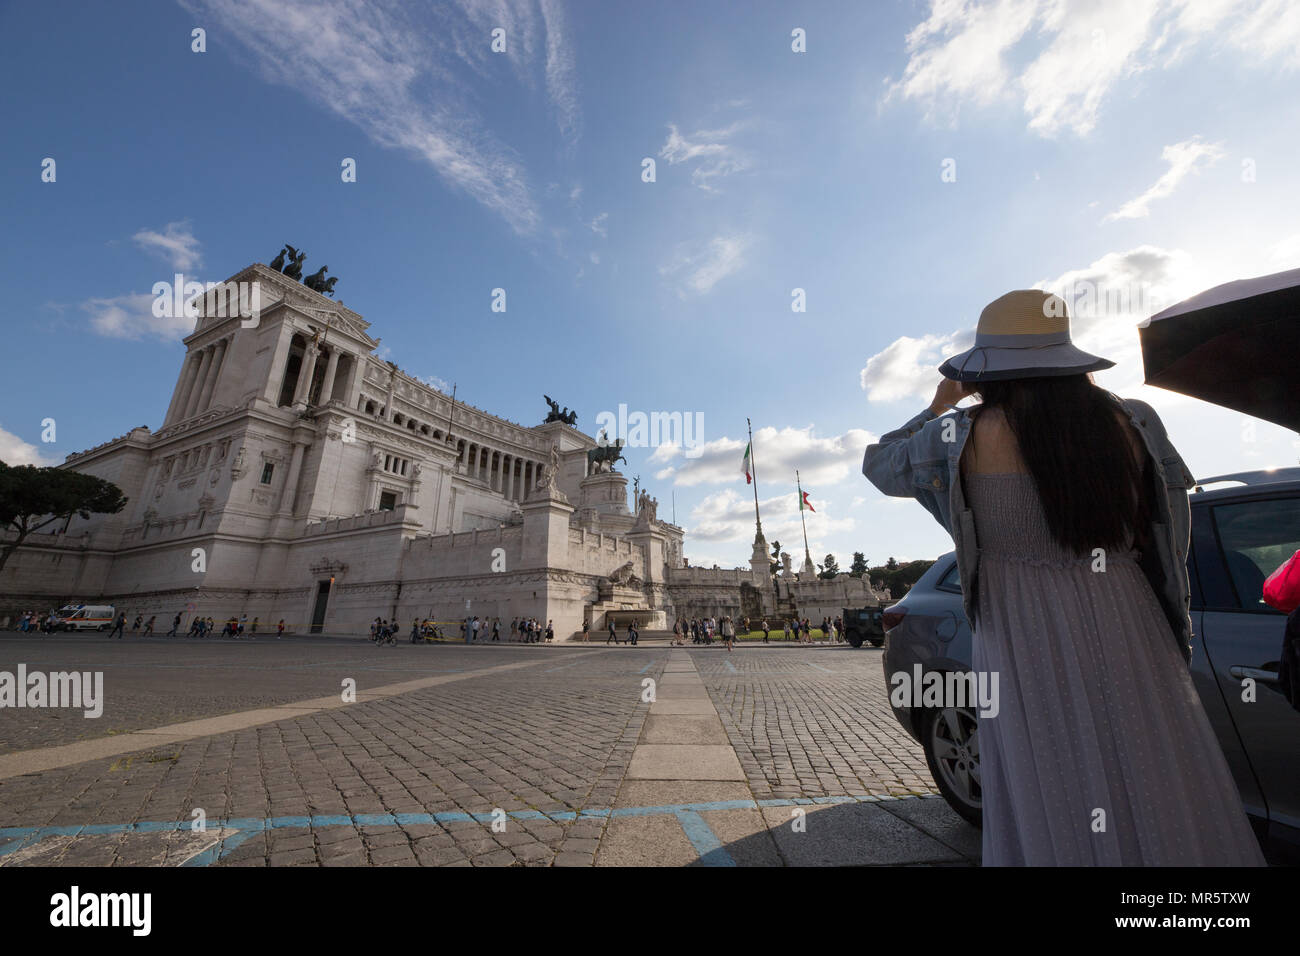 Rome Italie, tourisme Asie shotting photos femme au monument Vittoriano, sur la Piazza Venezia Banque D'Images